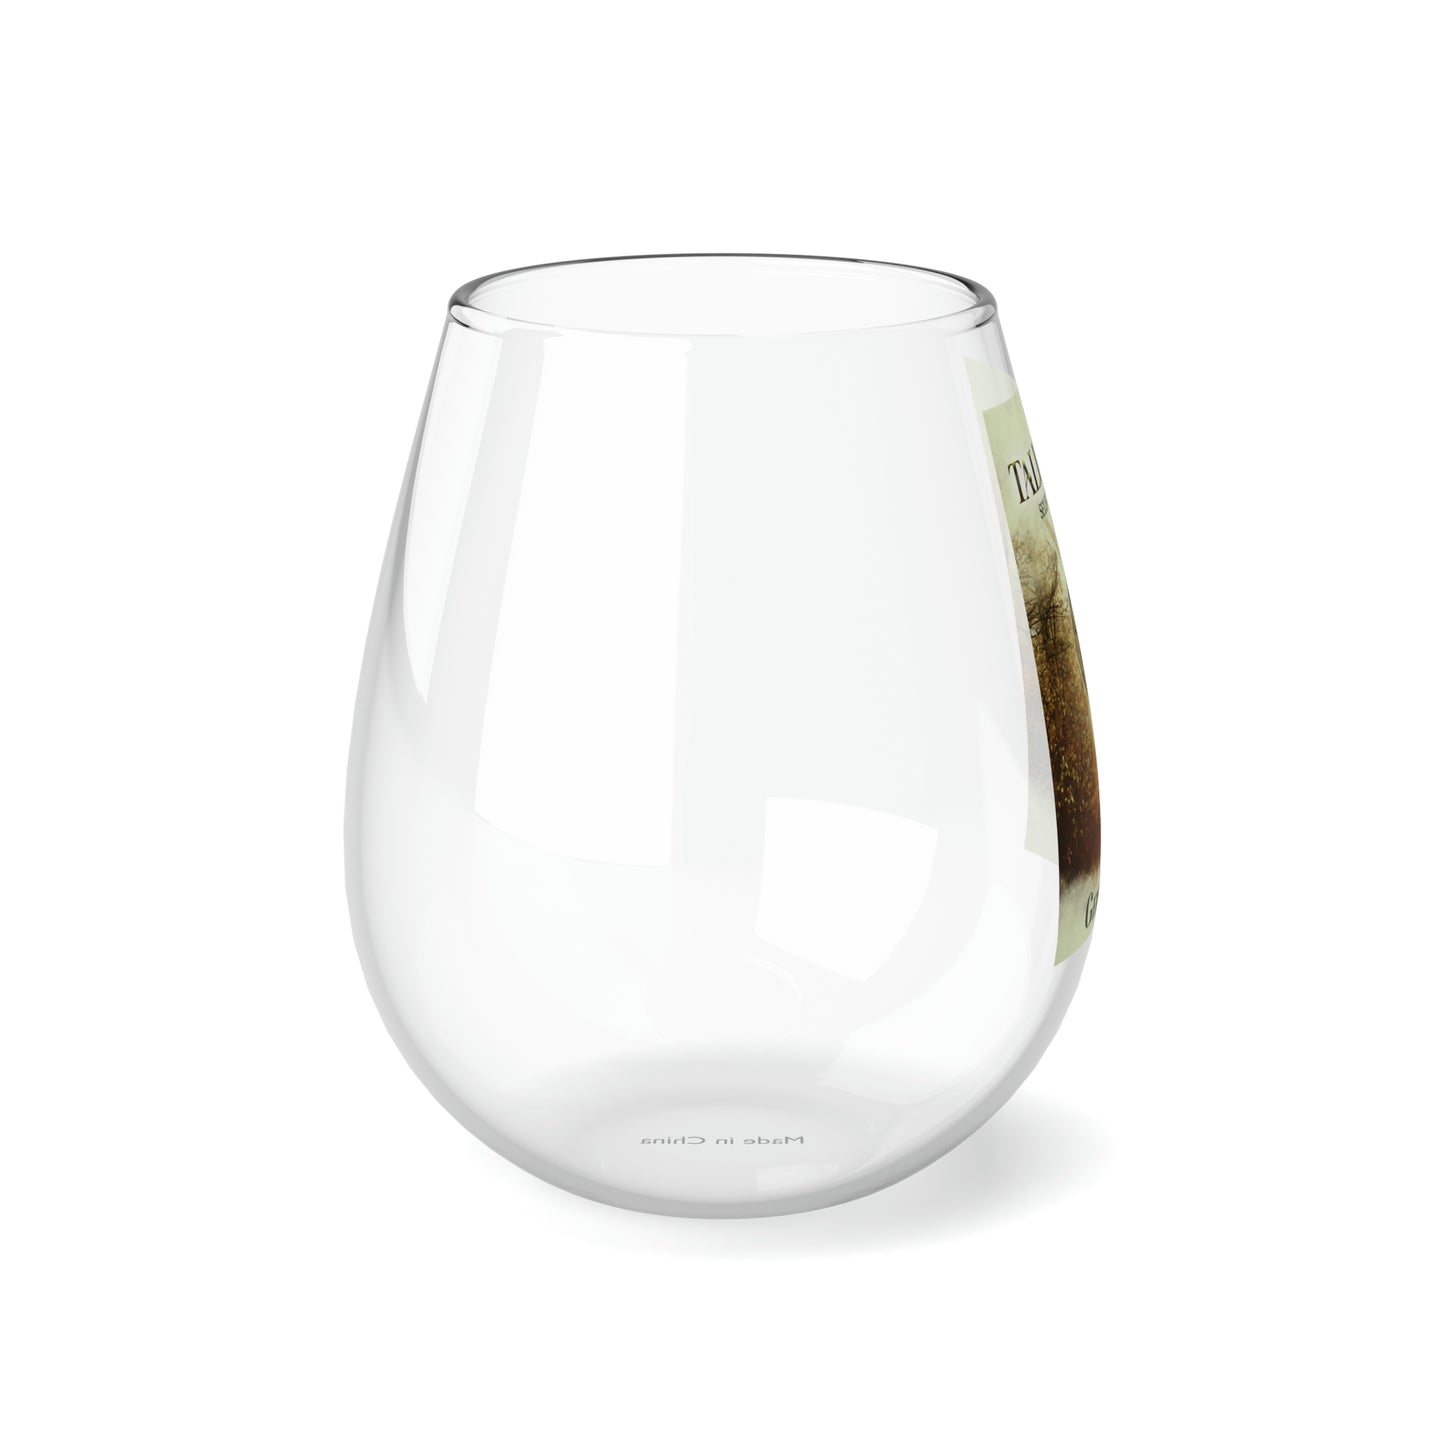 The Talisman - Stemless Wine Glass, 11.75oz